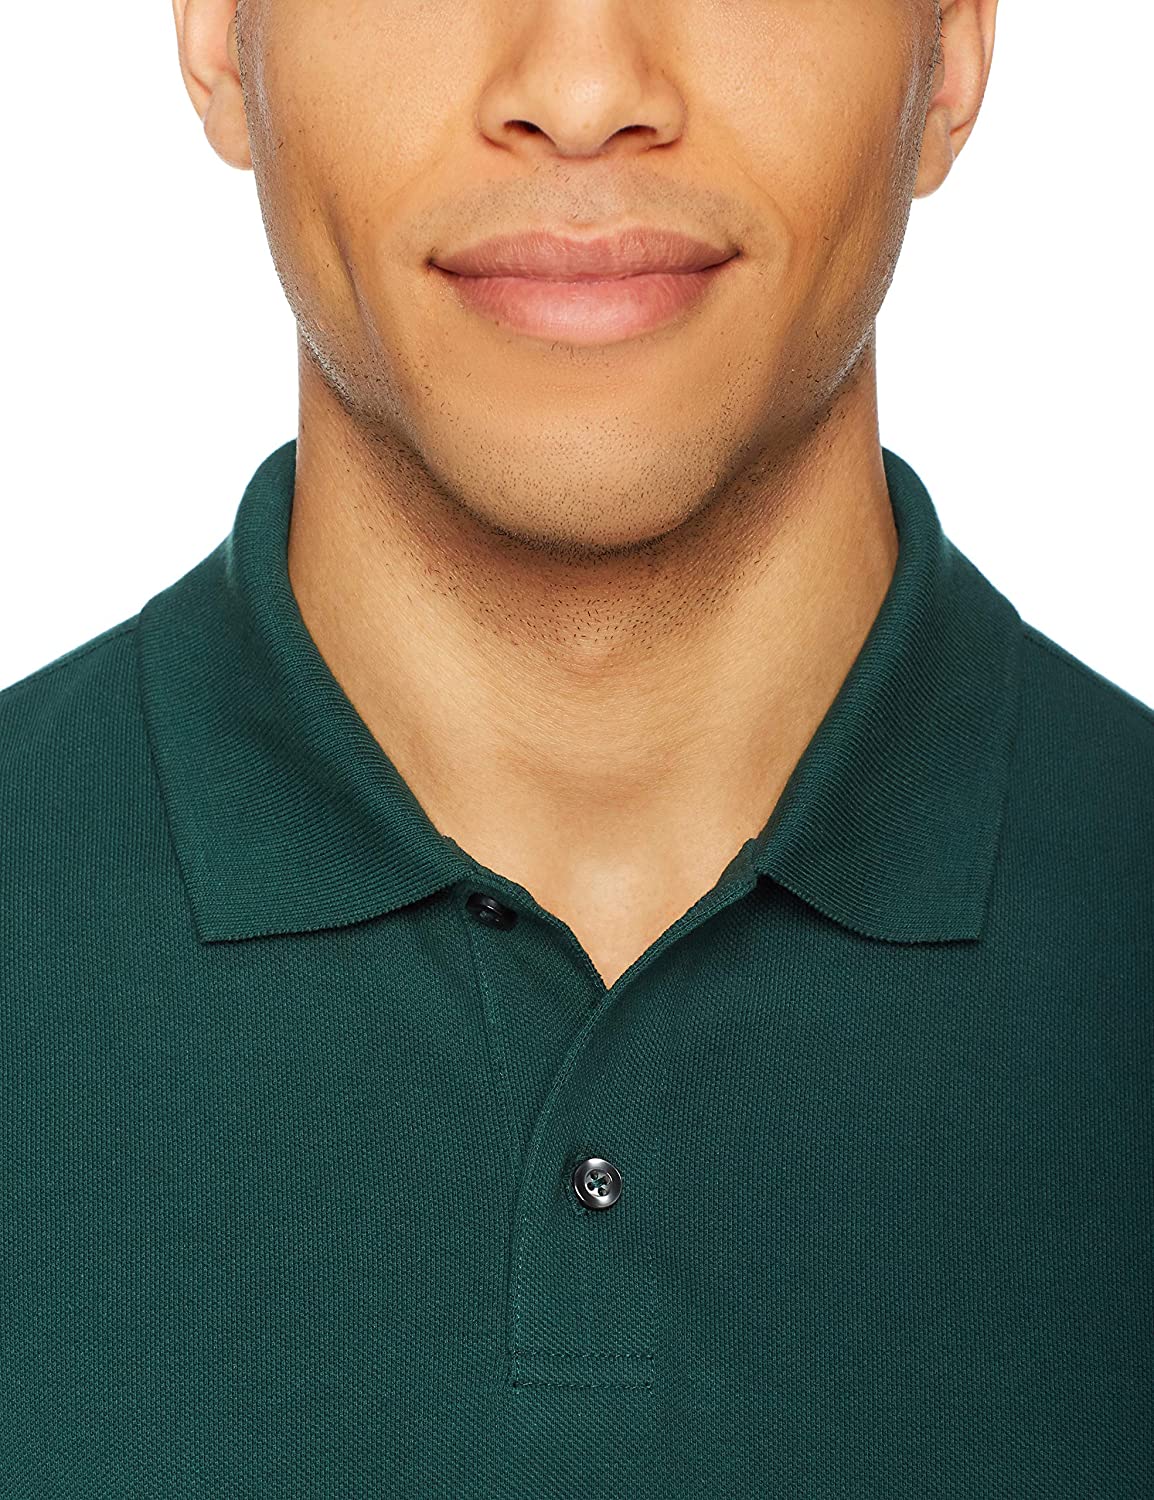 Essentials Men's Slim-fit Cotton Pique Polo Shirt